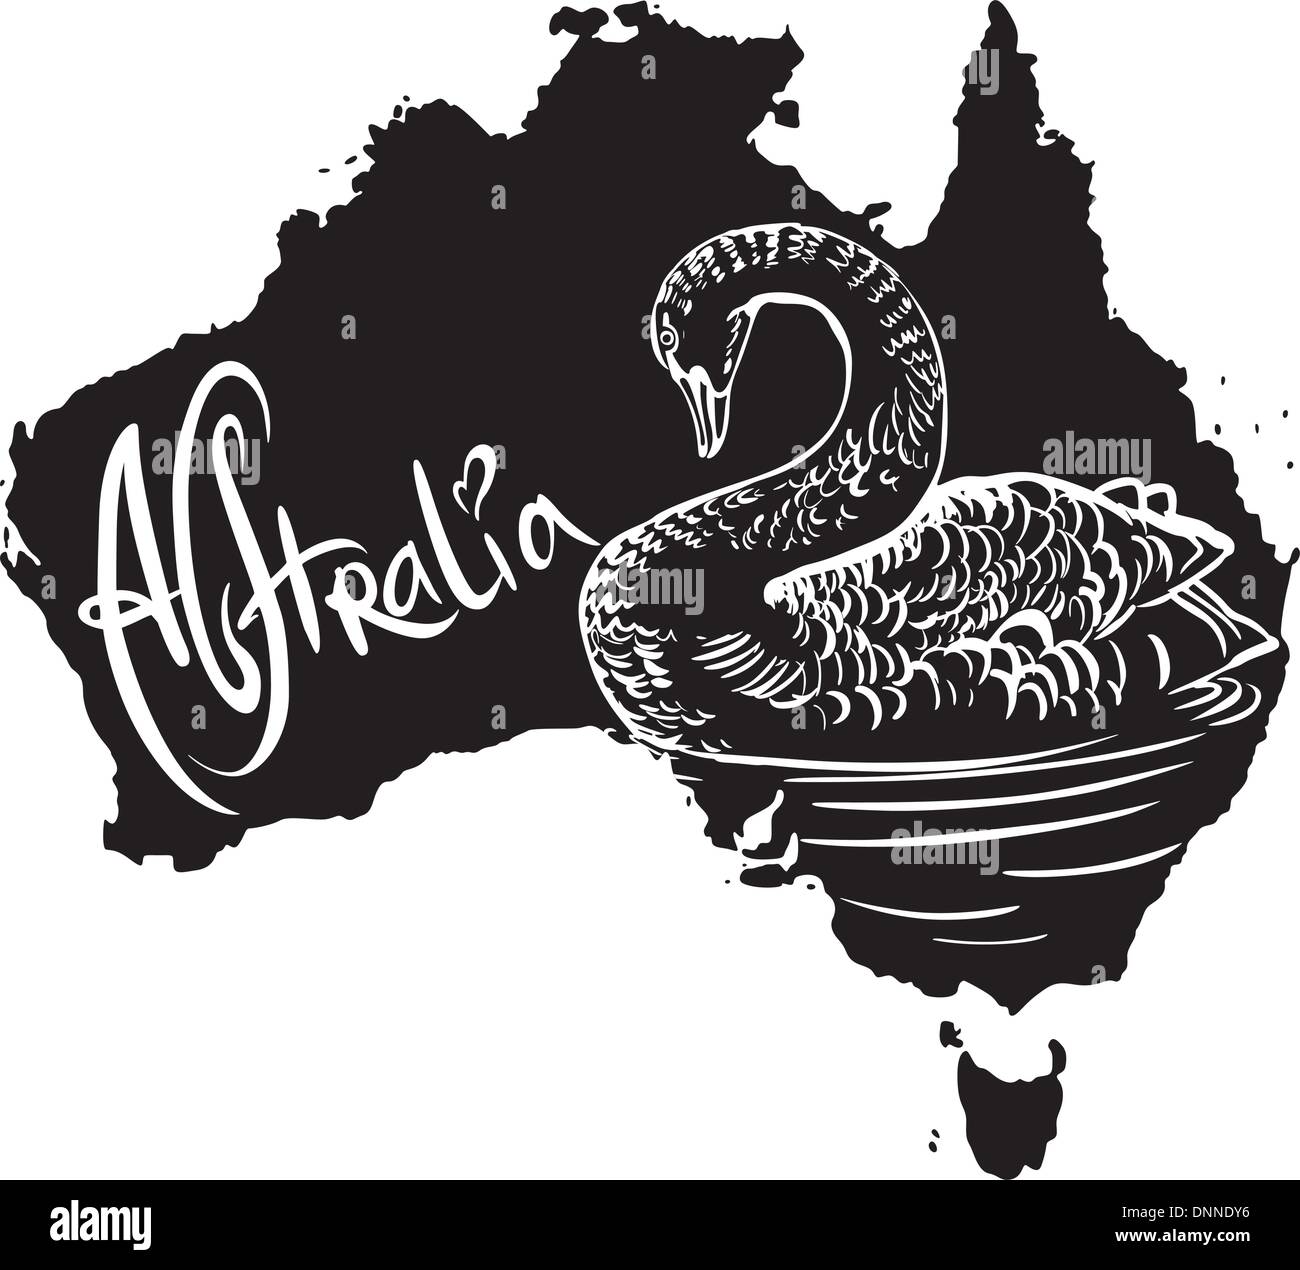 Schwarzer Schwan (Cygnus olor) auf der Karte von Australien. Schwarz / Weiß-Vektor-Illustration. Stock Vektor